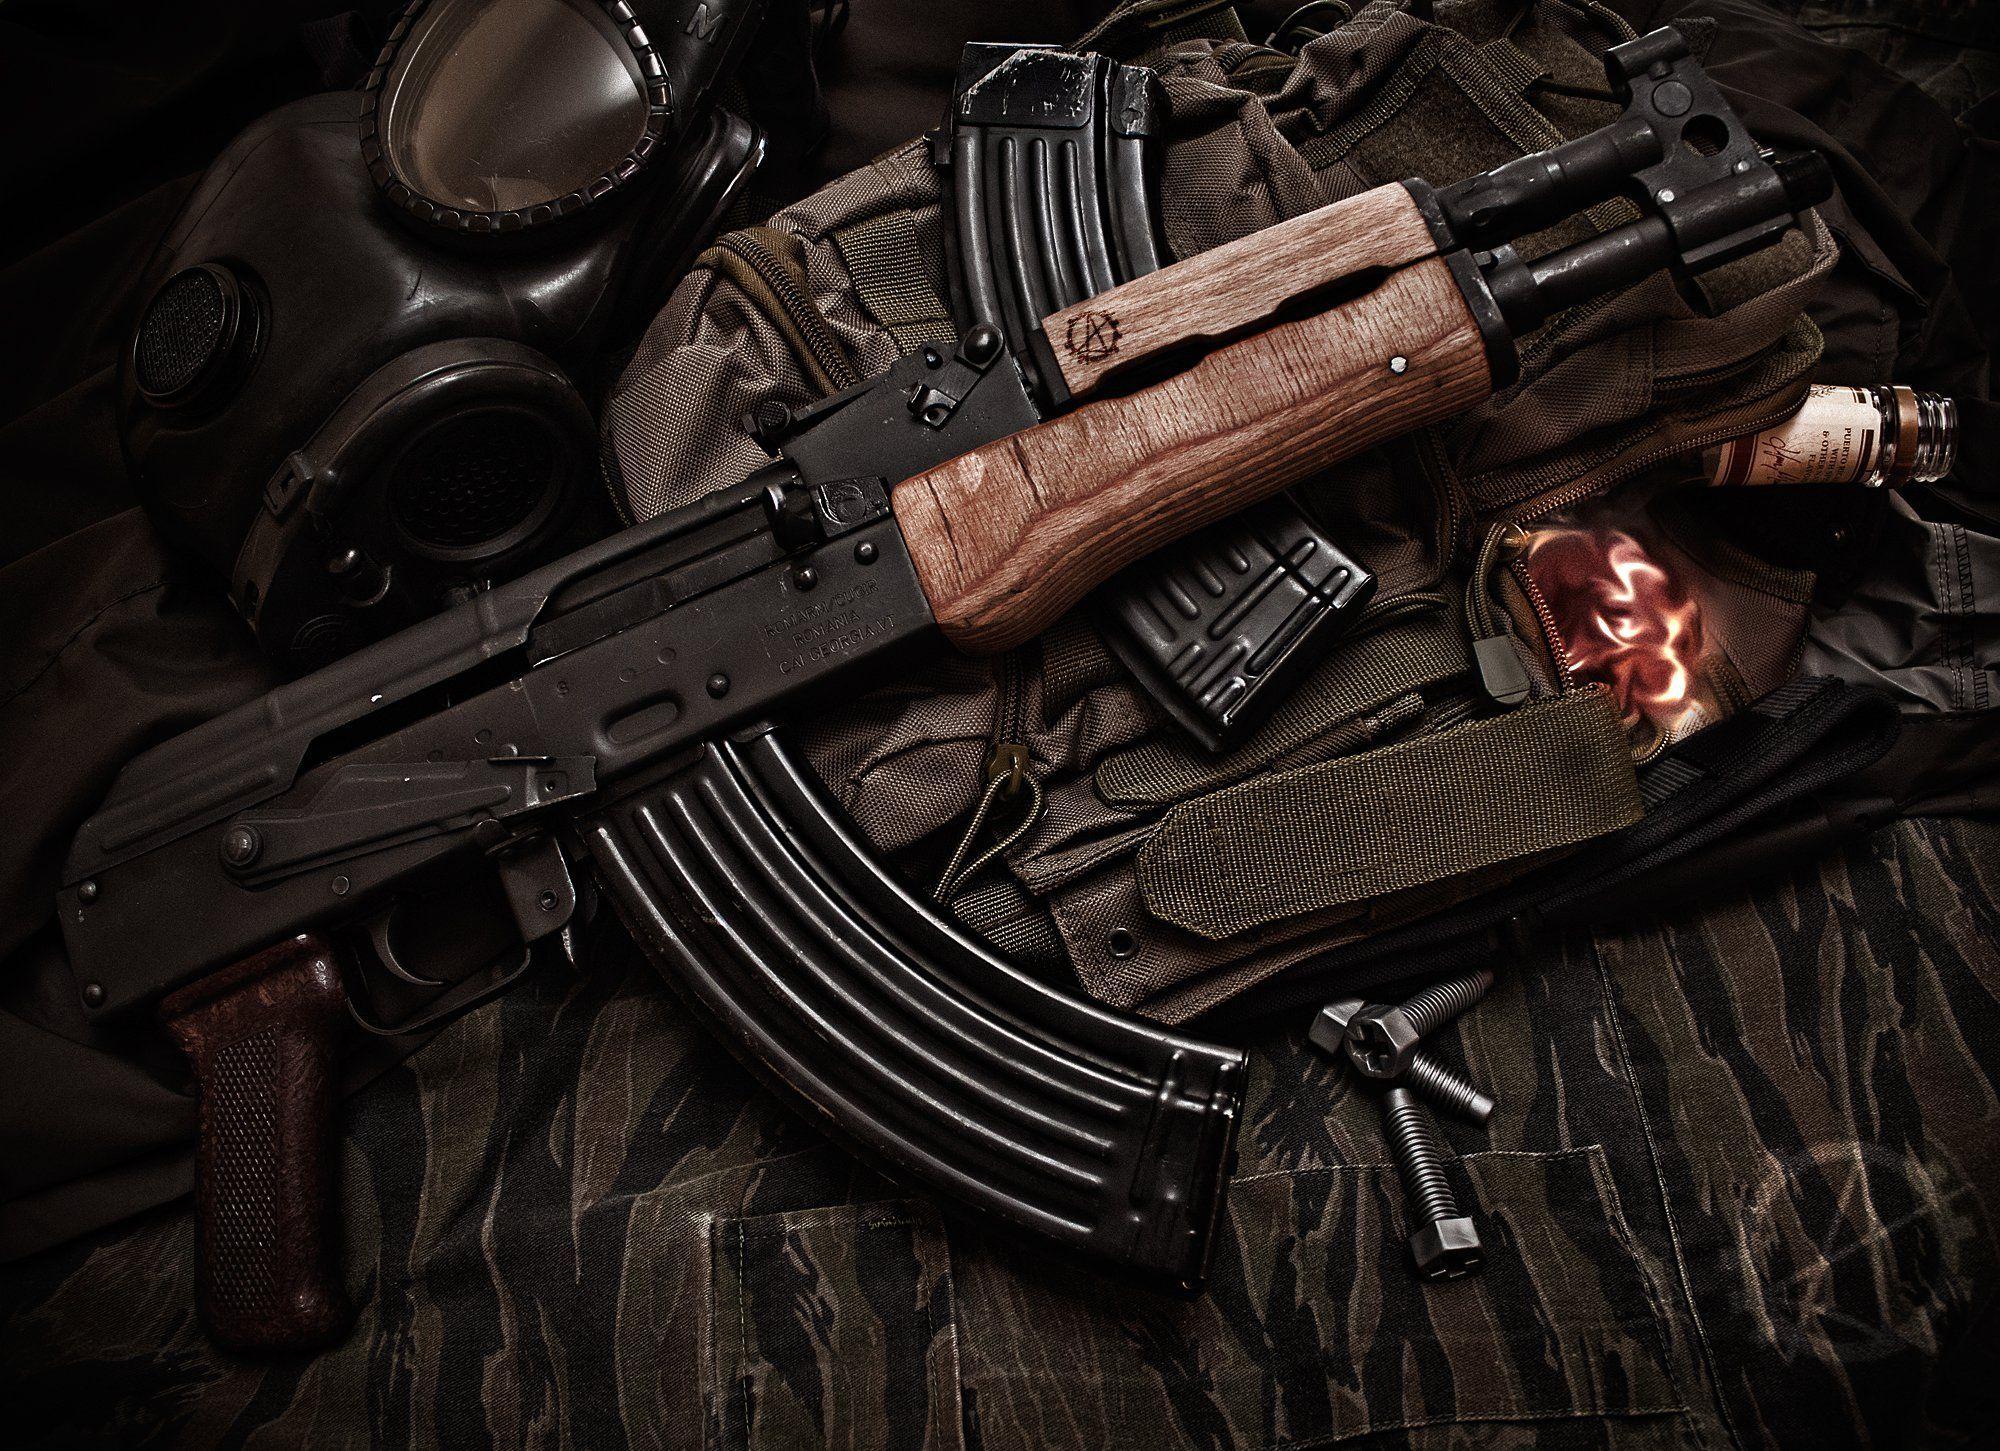 ak 47 wallpaper. Firearm Photography. Assault rifle, Guns, Firearms